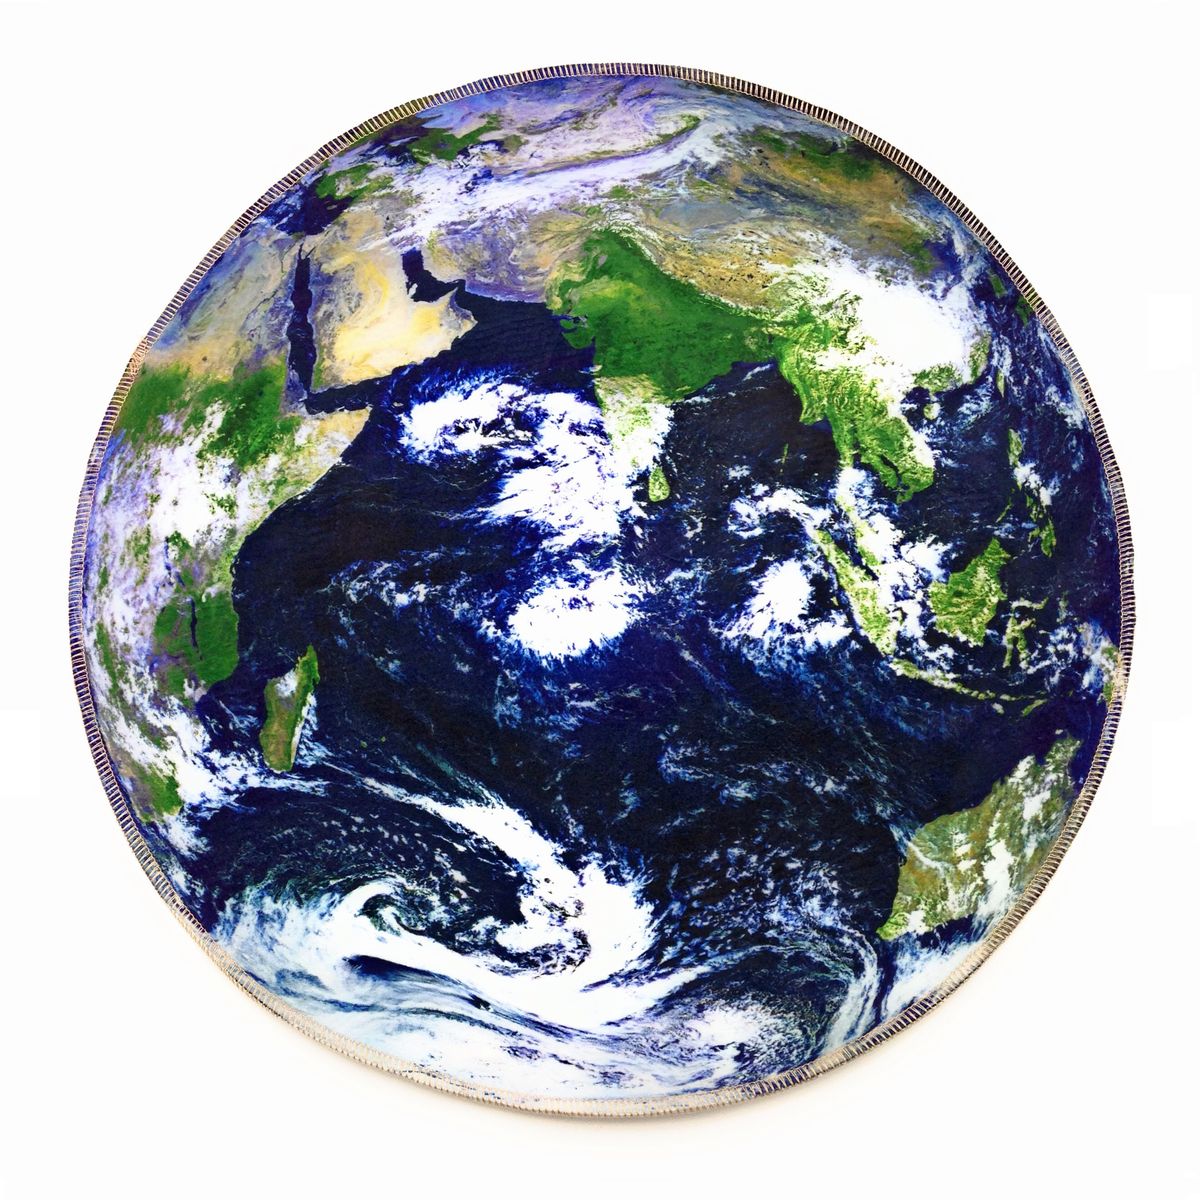 楽天市場 デザインマット 円形 リアルな写真風 宇宙から見た地球 小サイズ モノッコ